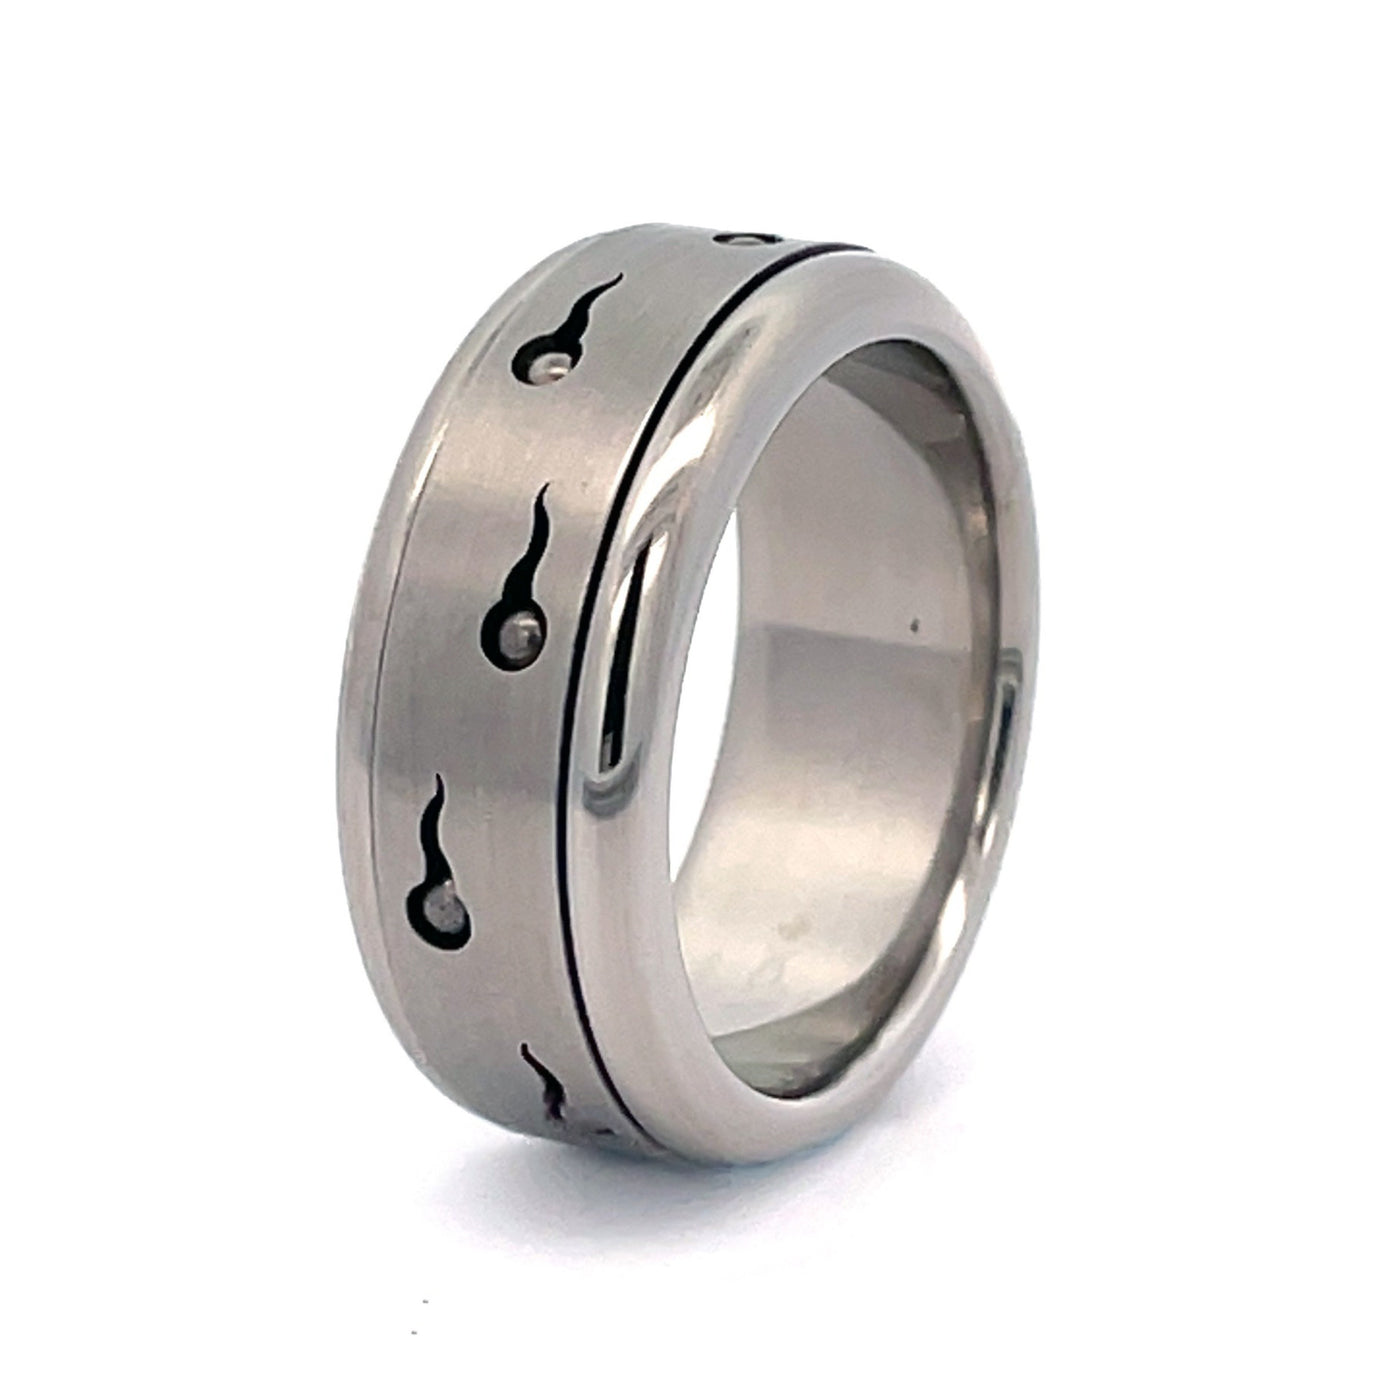 Spinner Ring For Men Women Fashion Ring Stainless Steel Ring Cool Titanium  Ring For Men Women Beer Bottle Opener Chain Rings (Black 8)|Amazon.com